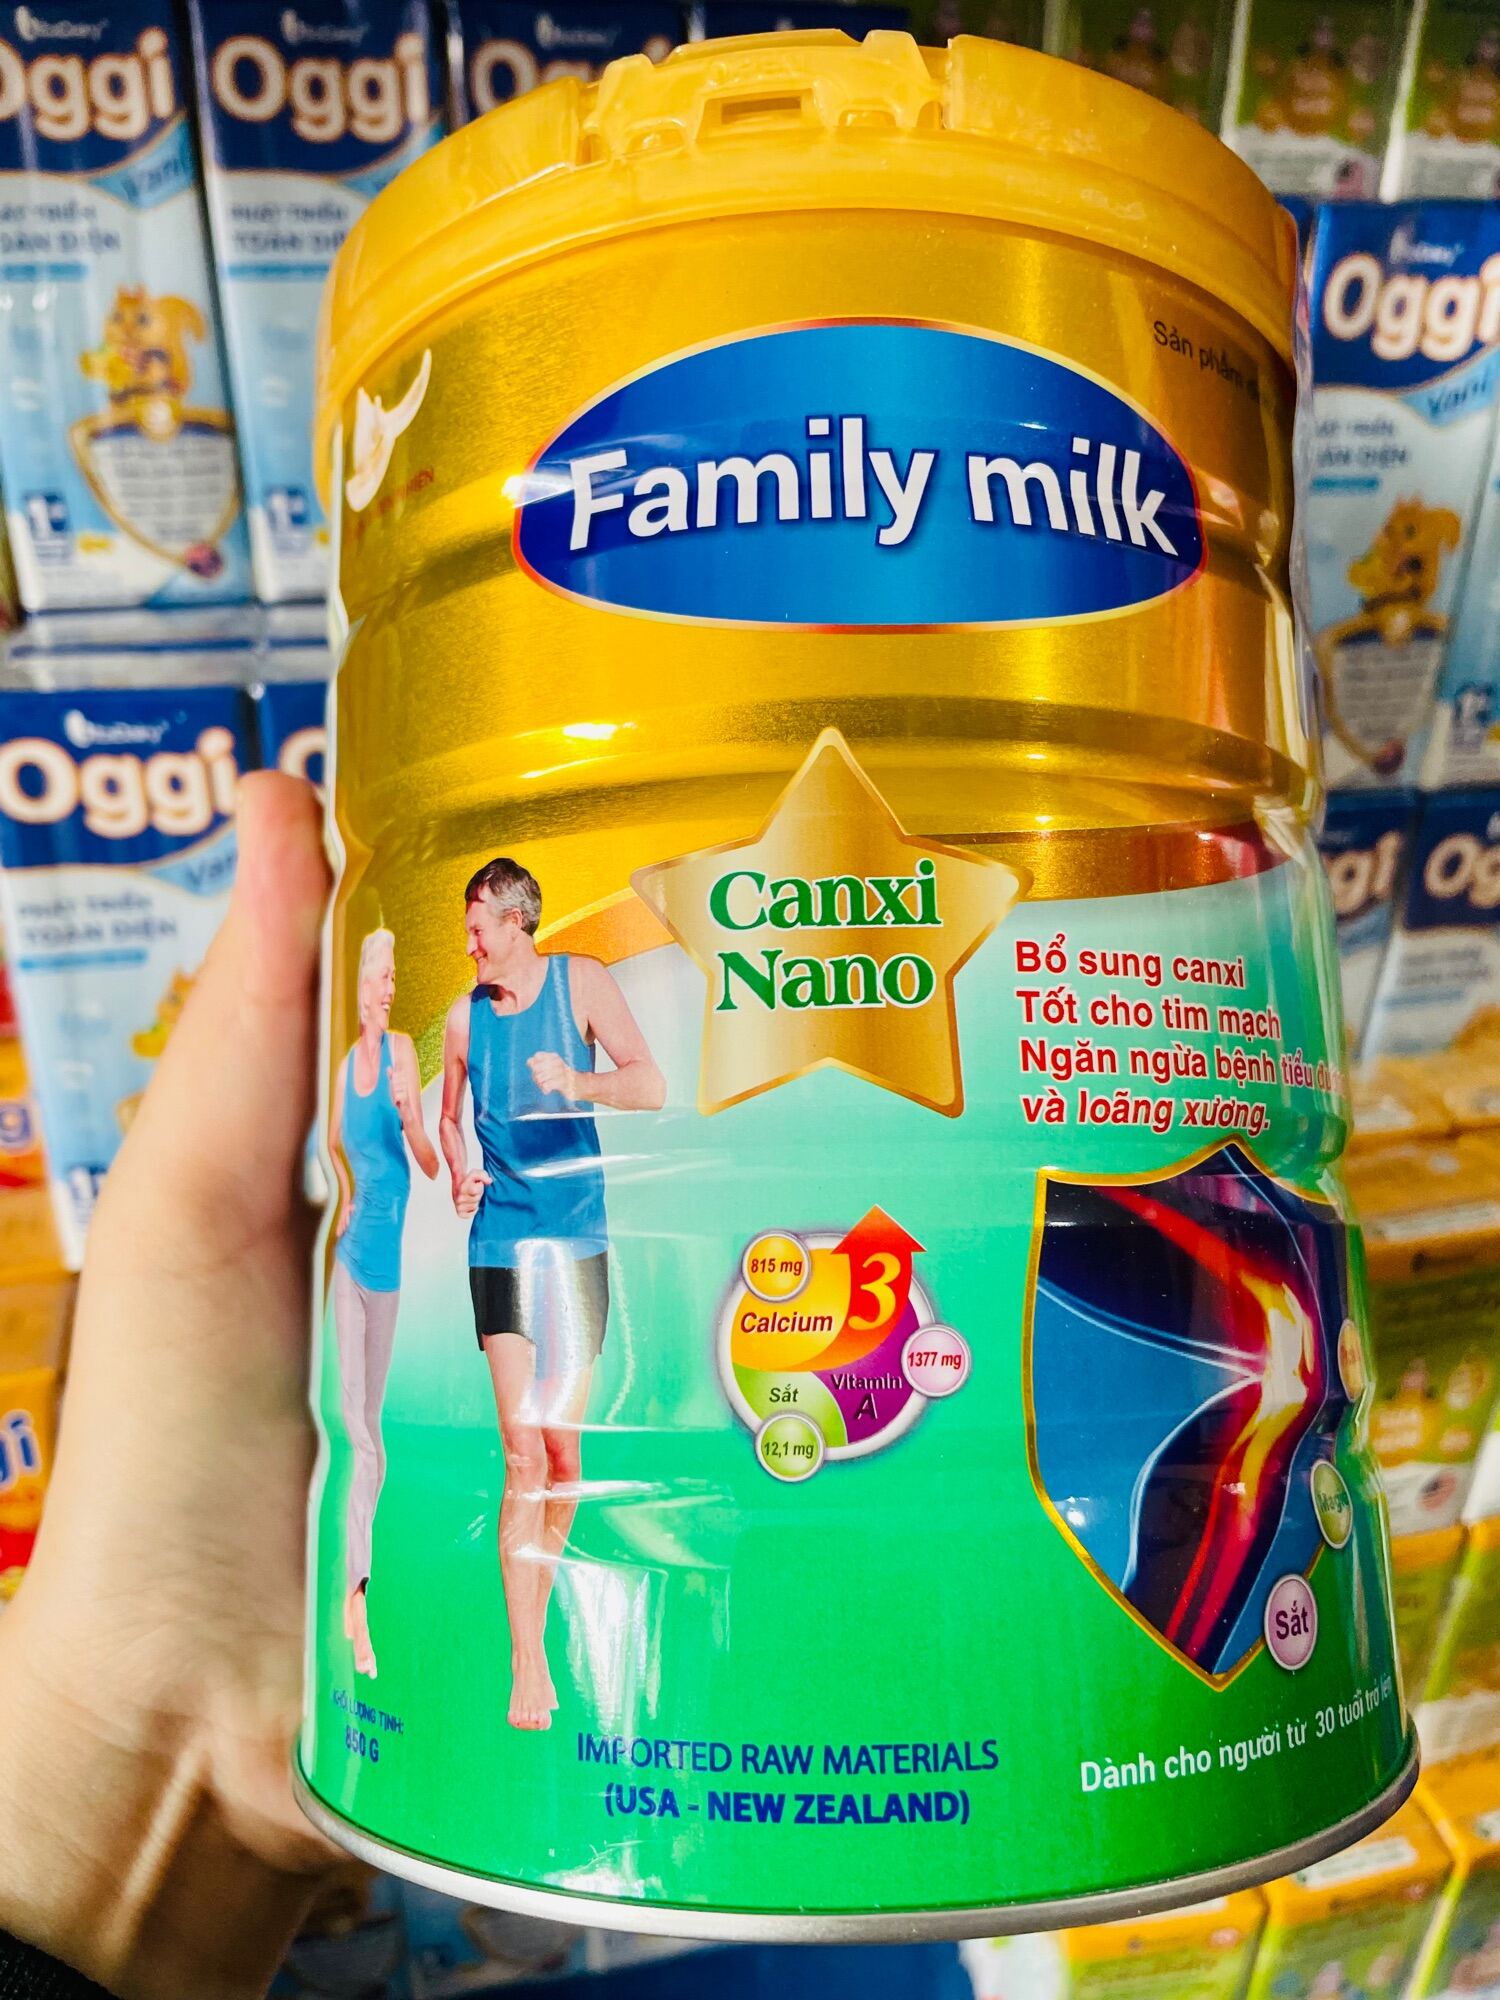 Sữa Family Canxi Nano cho người từ 30 tuổi